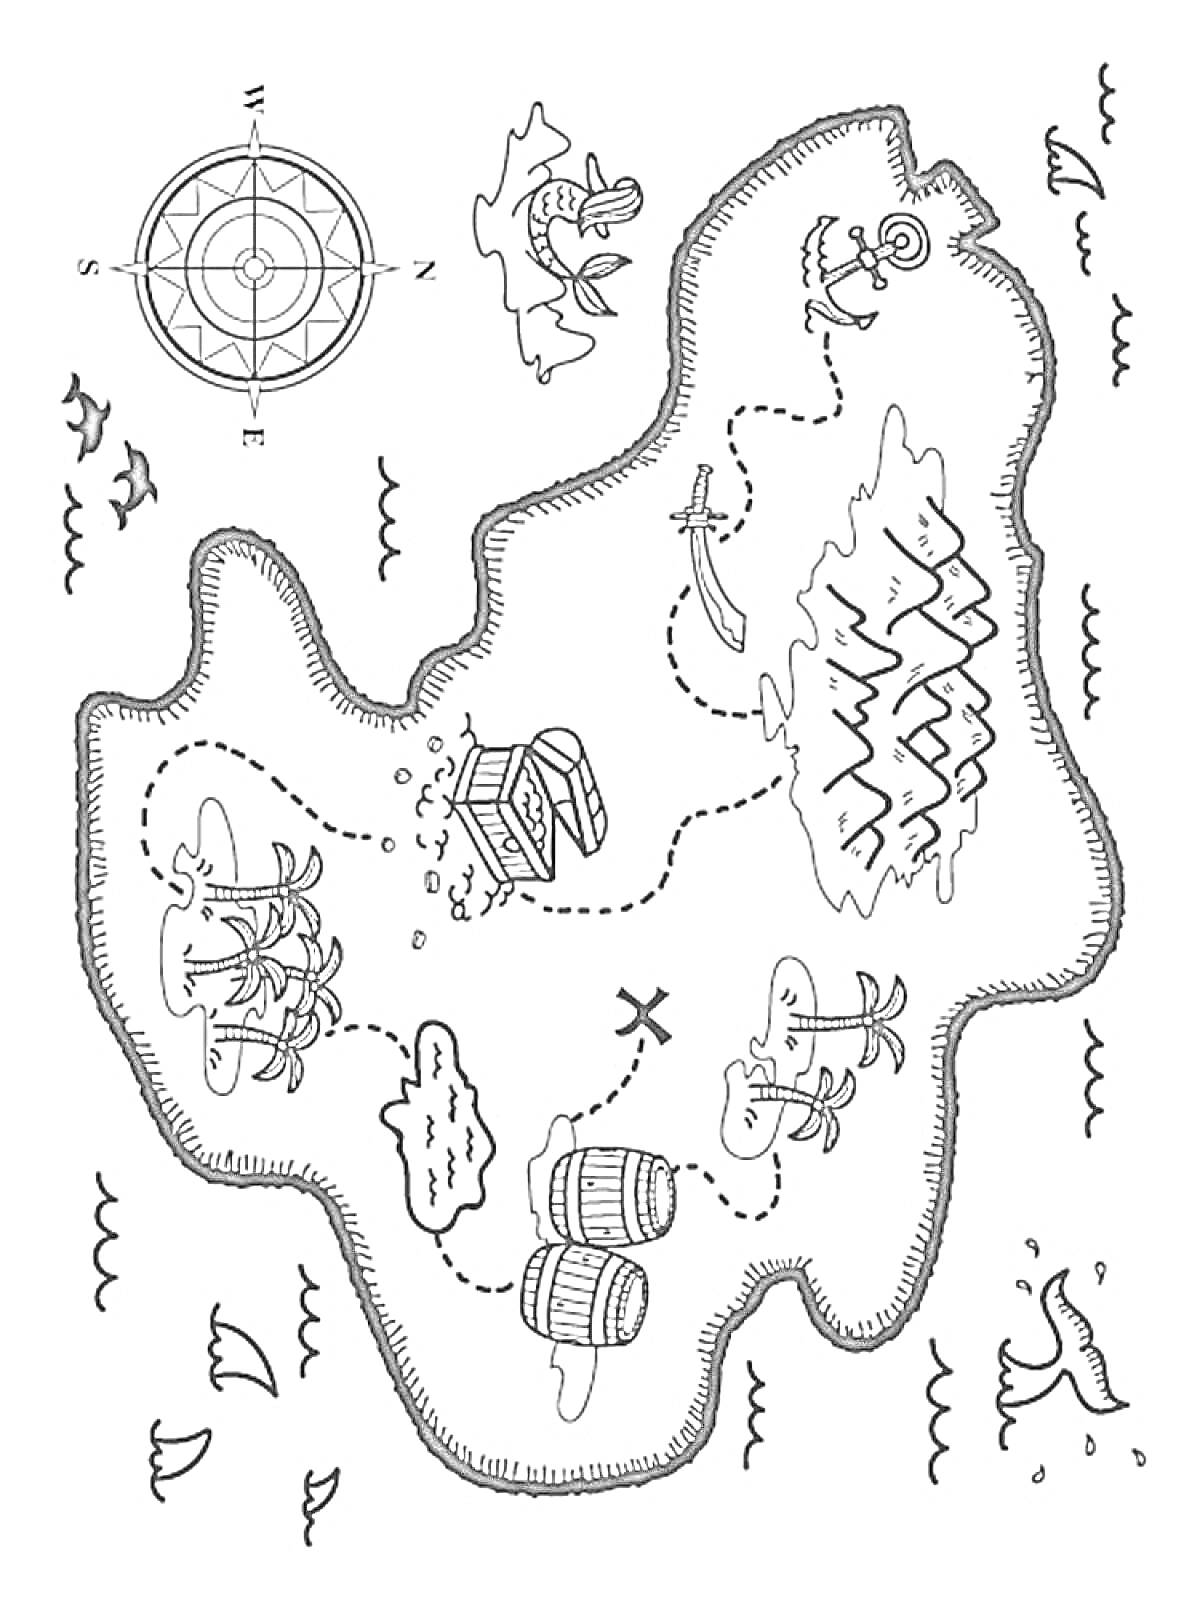 Раскраска Карта сокровищ с компасом, сундуками, пальмами, островами, бочками, горой и волнами